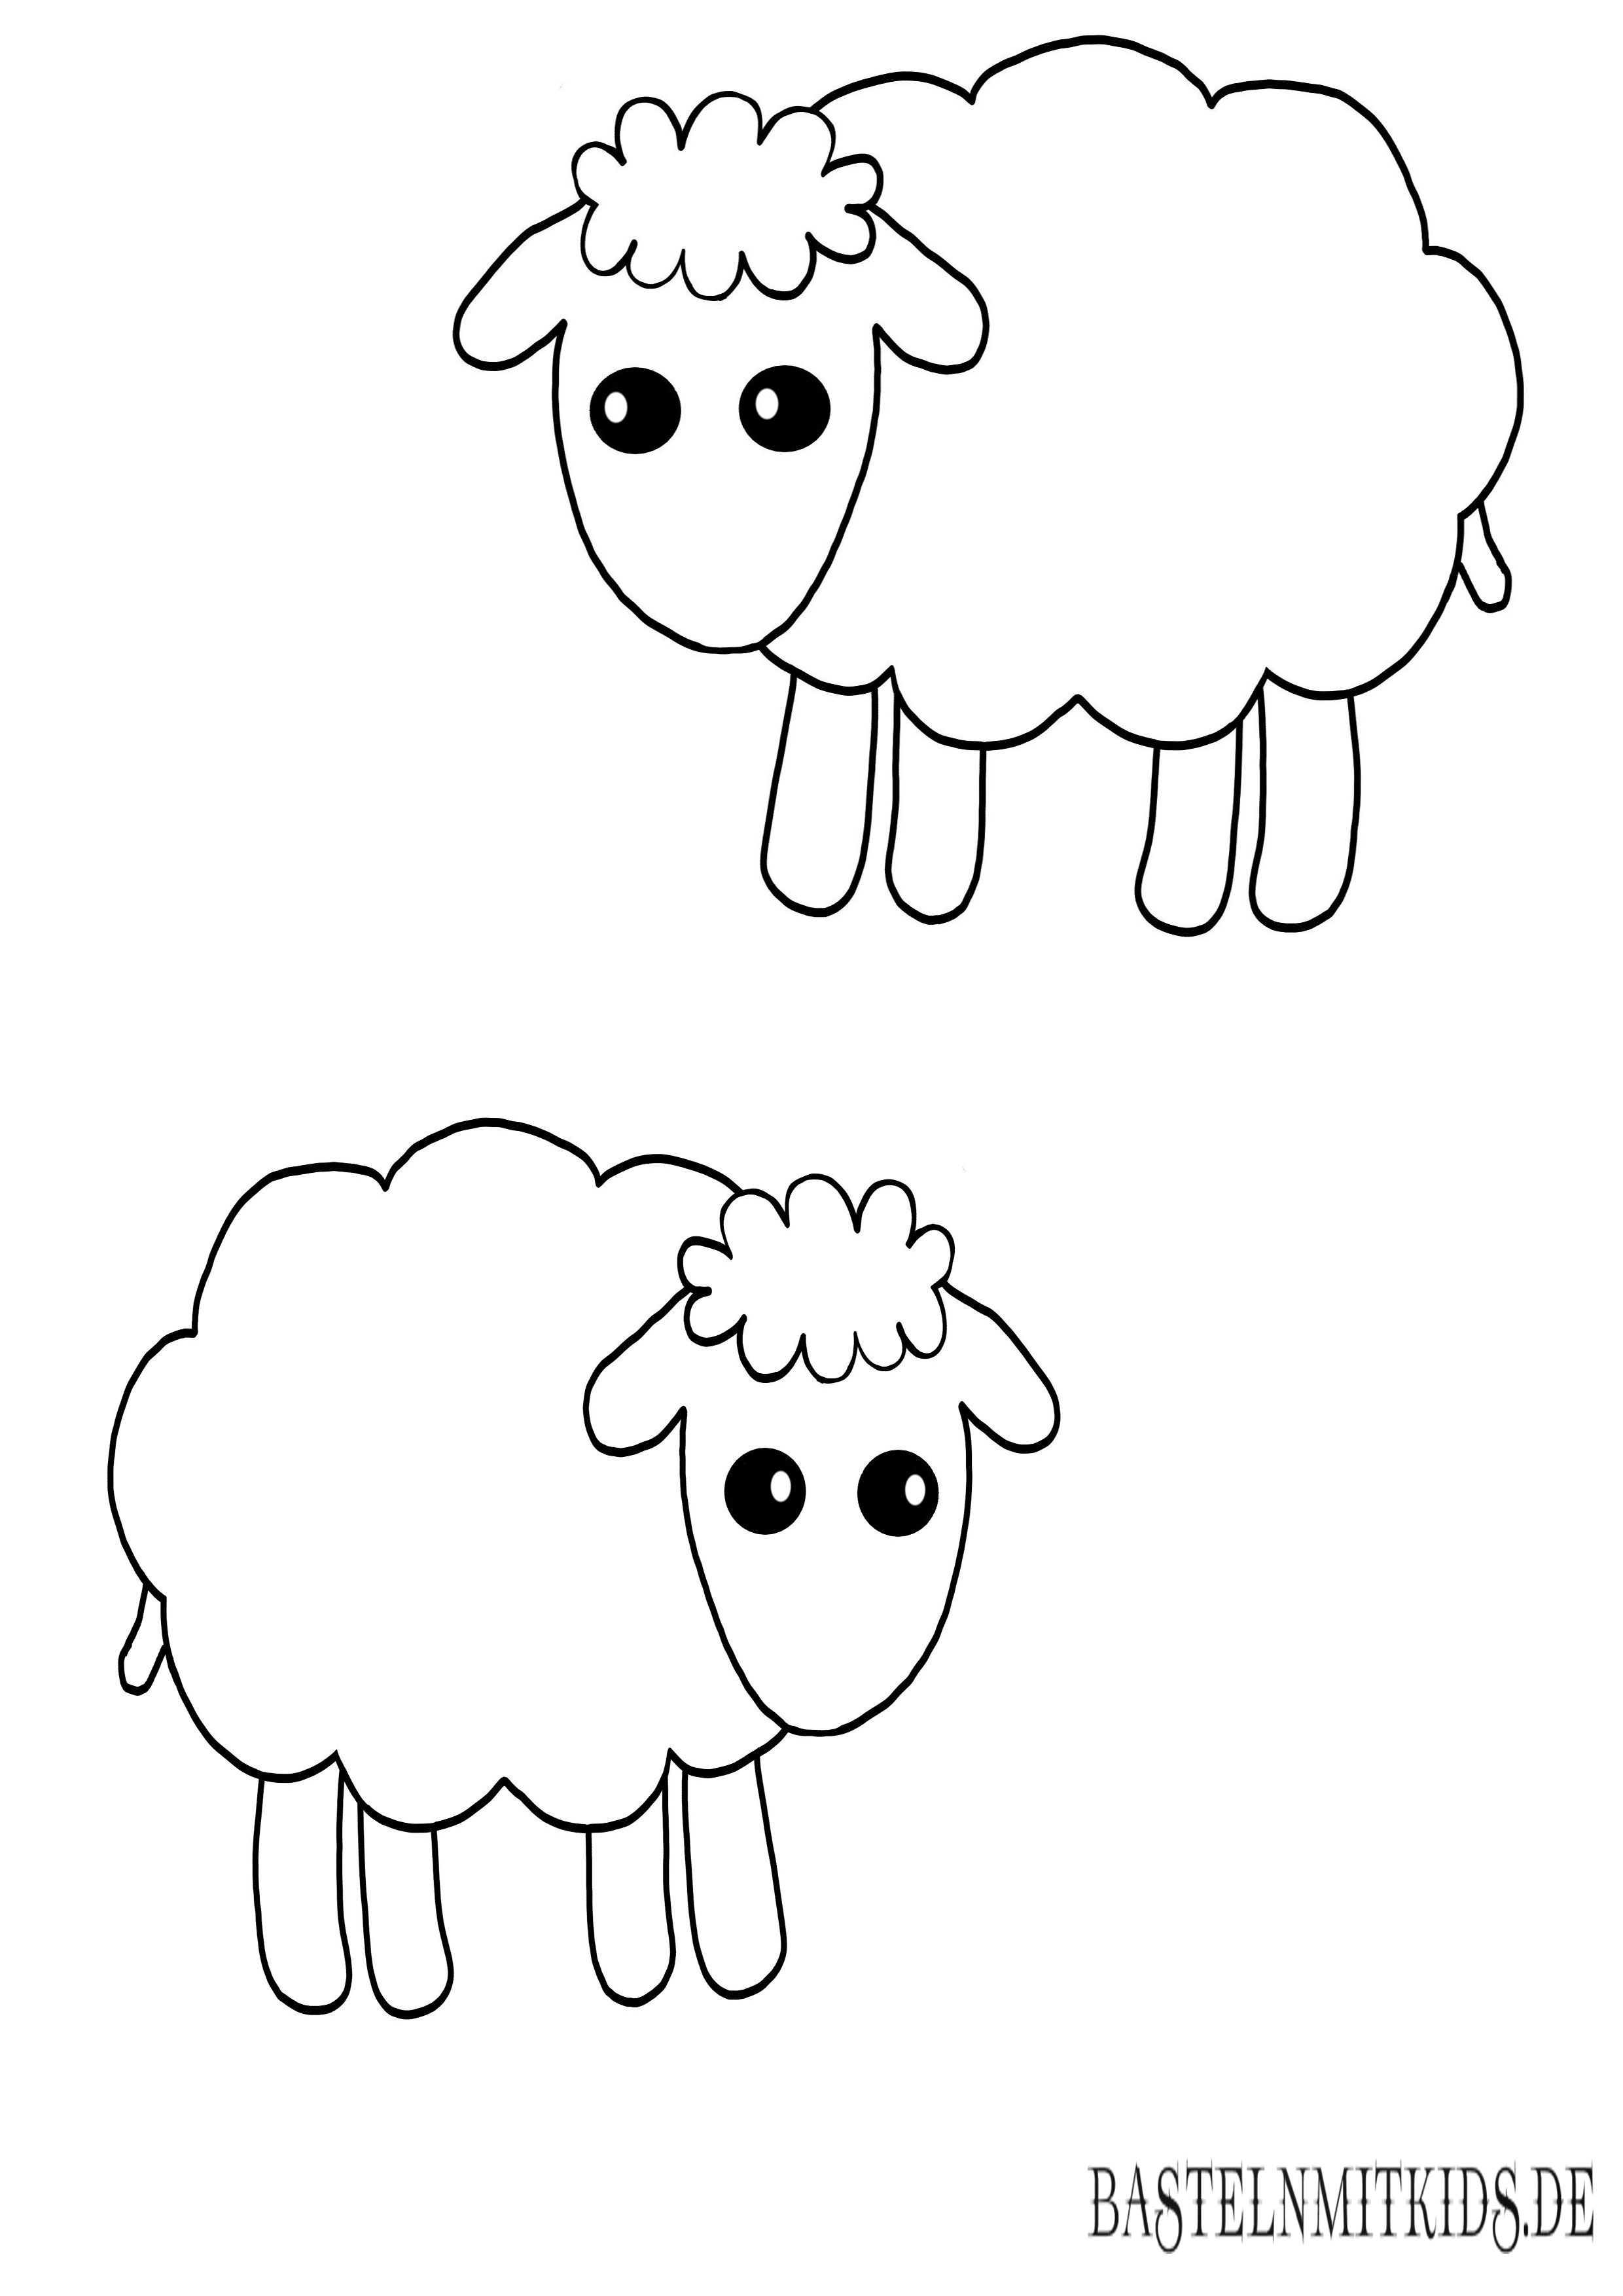 Видео как нарисовать овечку